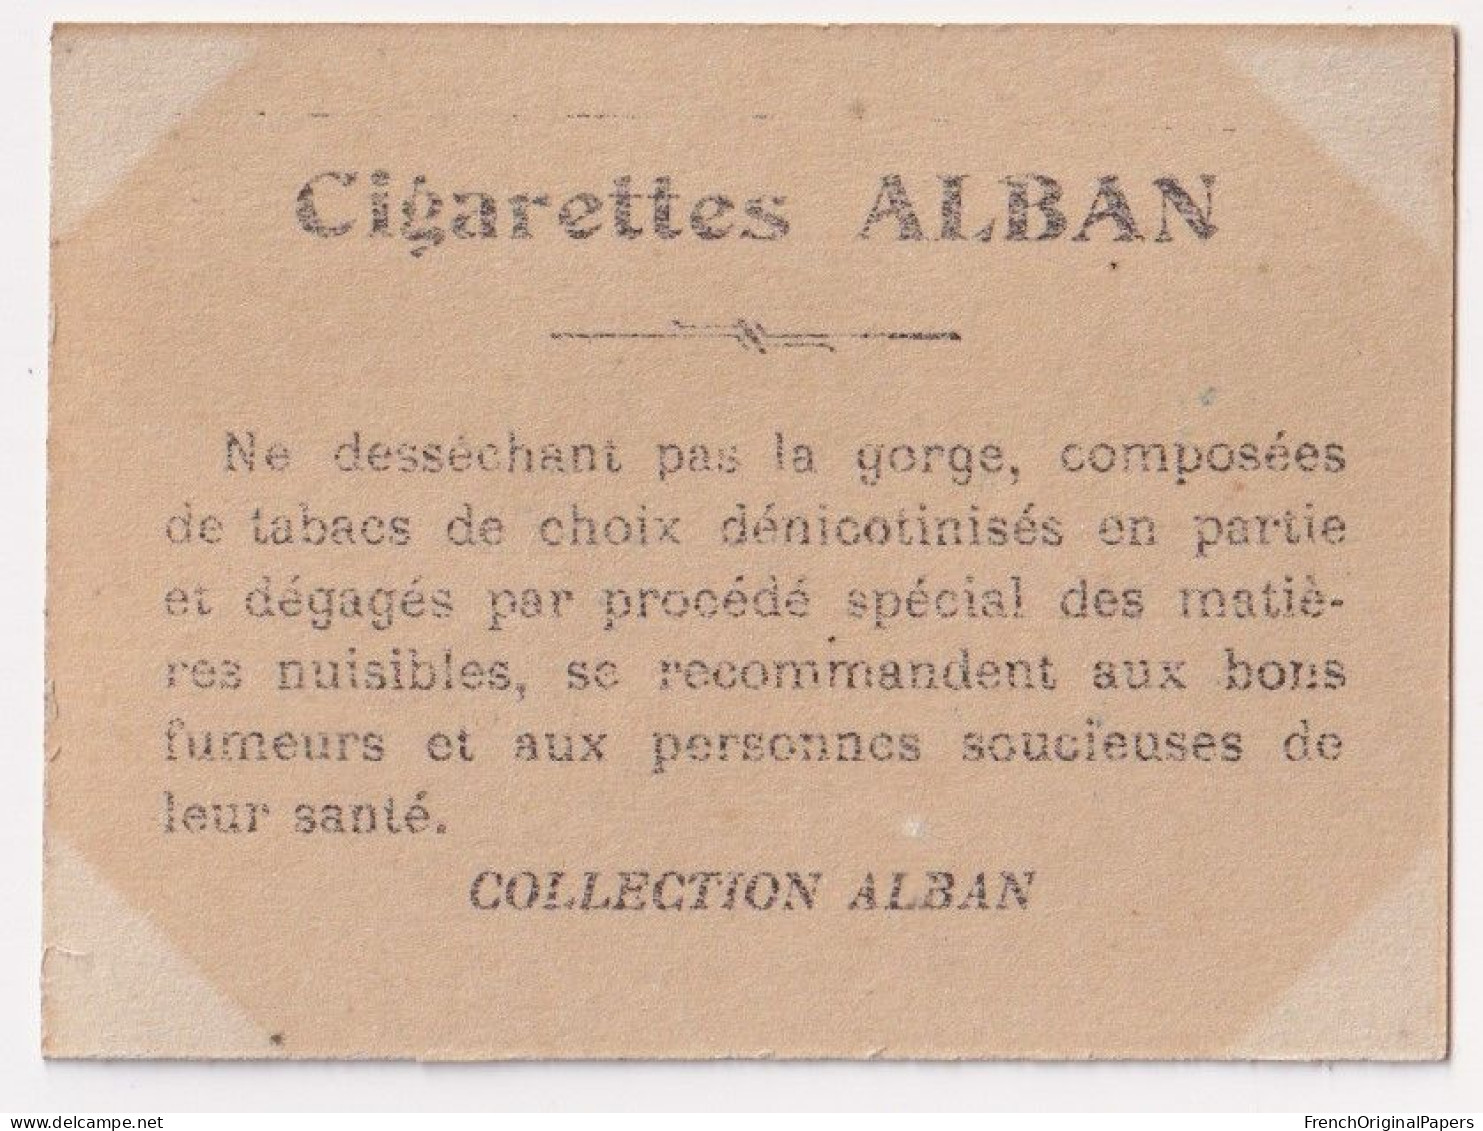 Tolédo - Cigarettes L. Alban 1910 Photo Femme Sexy Pin-up Vintage Artiste Cabaret Paris Bône Danse Danseuse A62-18 - Otras Marcas